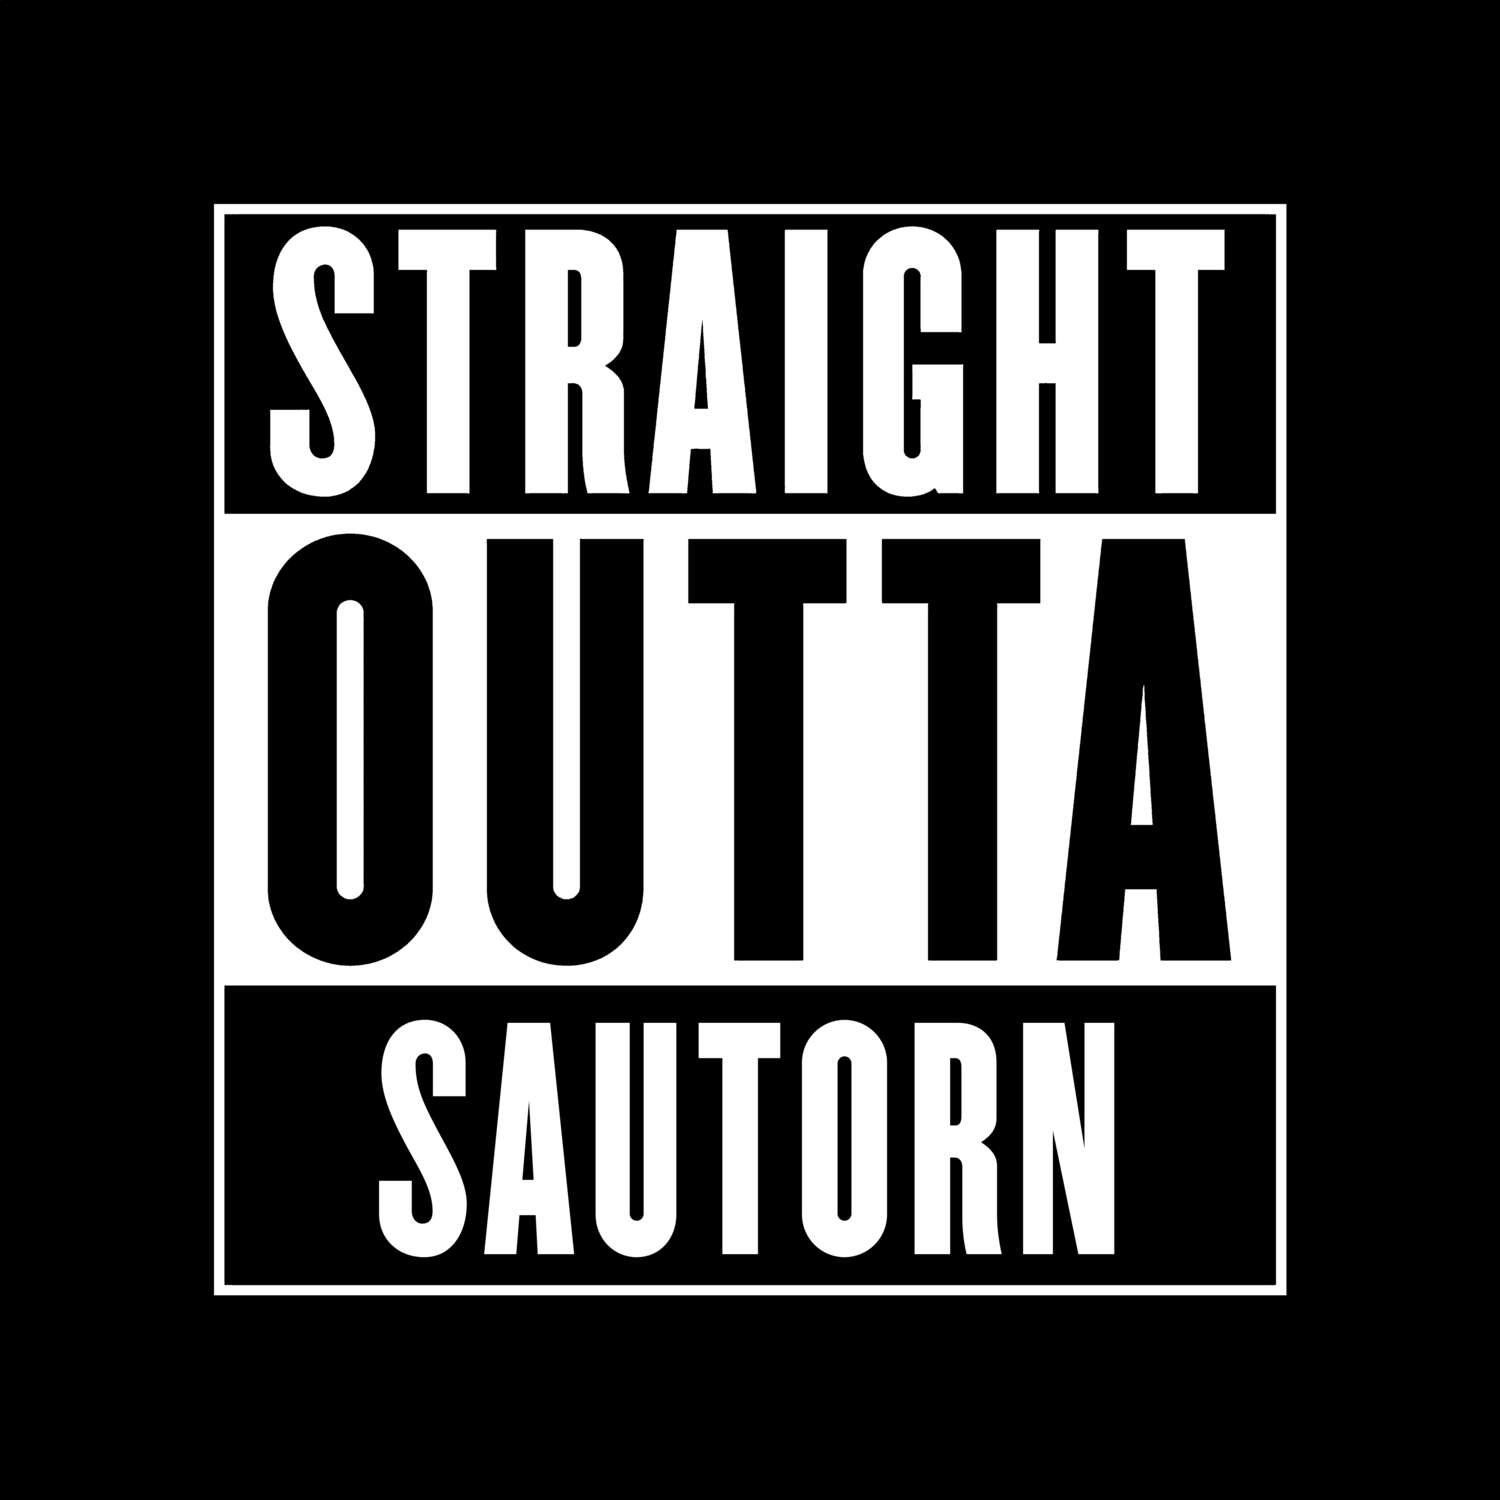 Sautorn T-Shirt »Straight Outta«